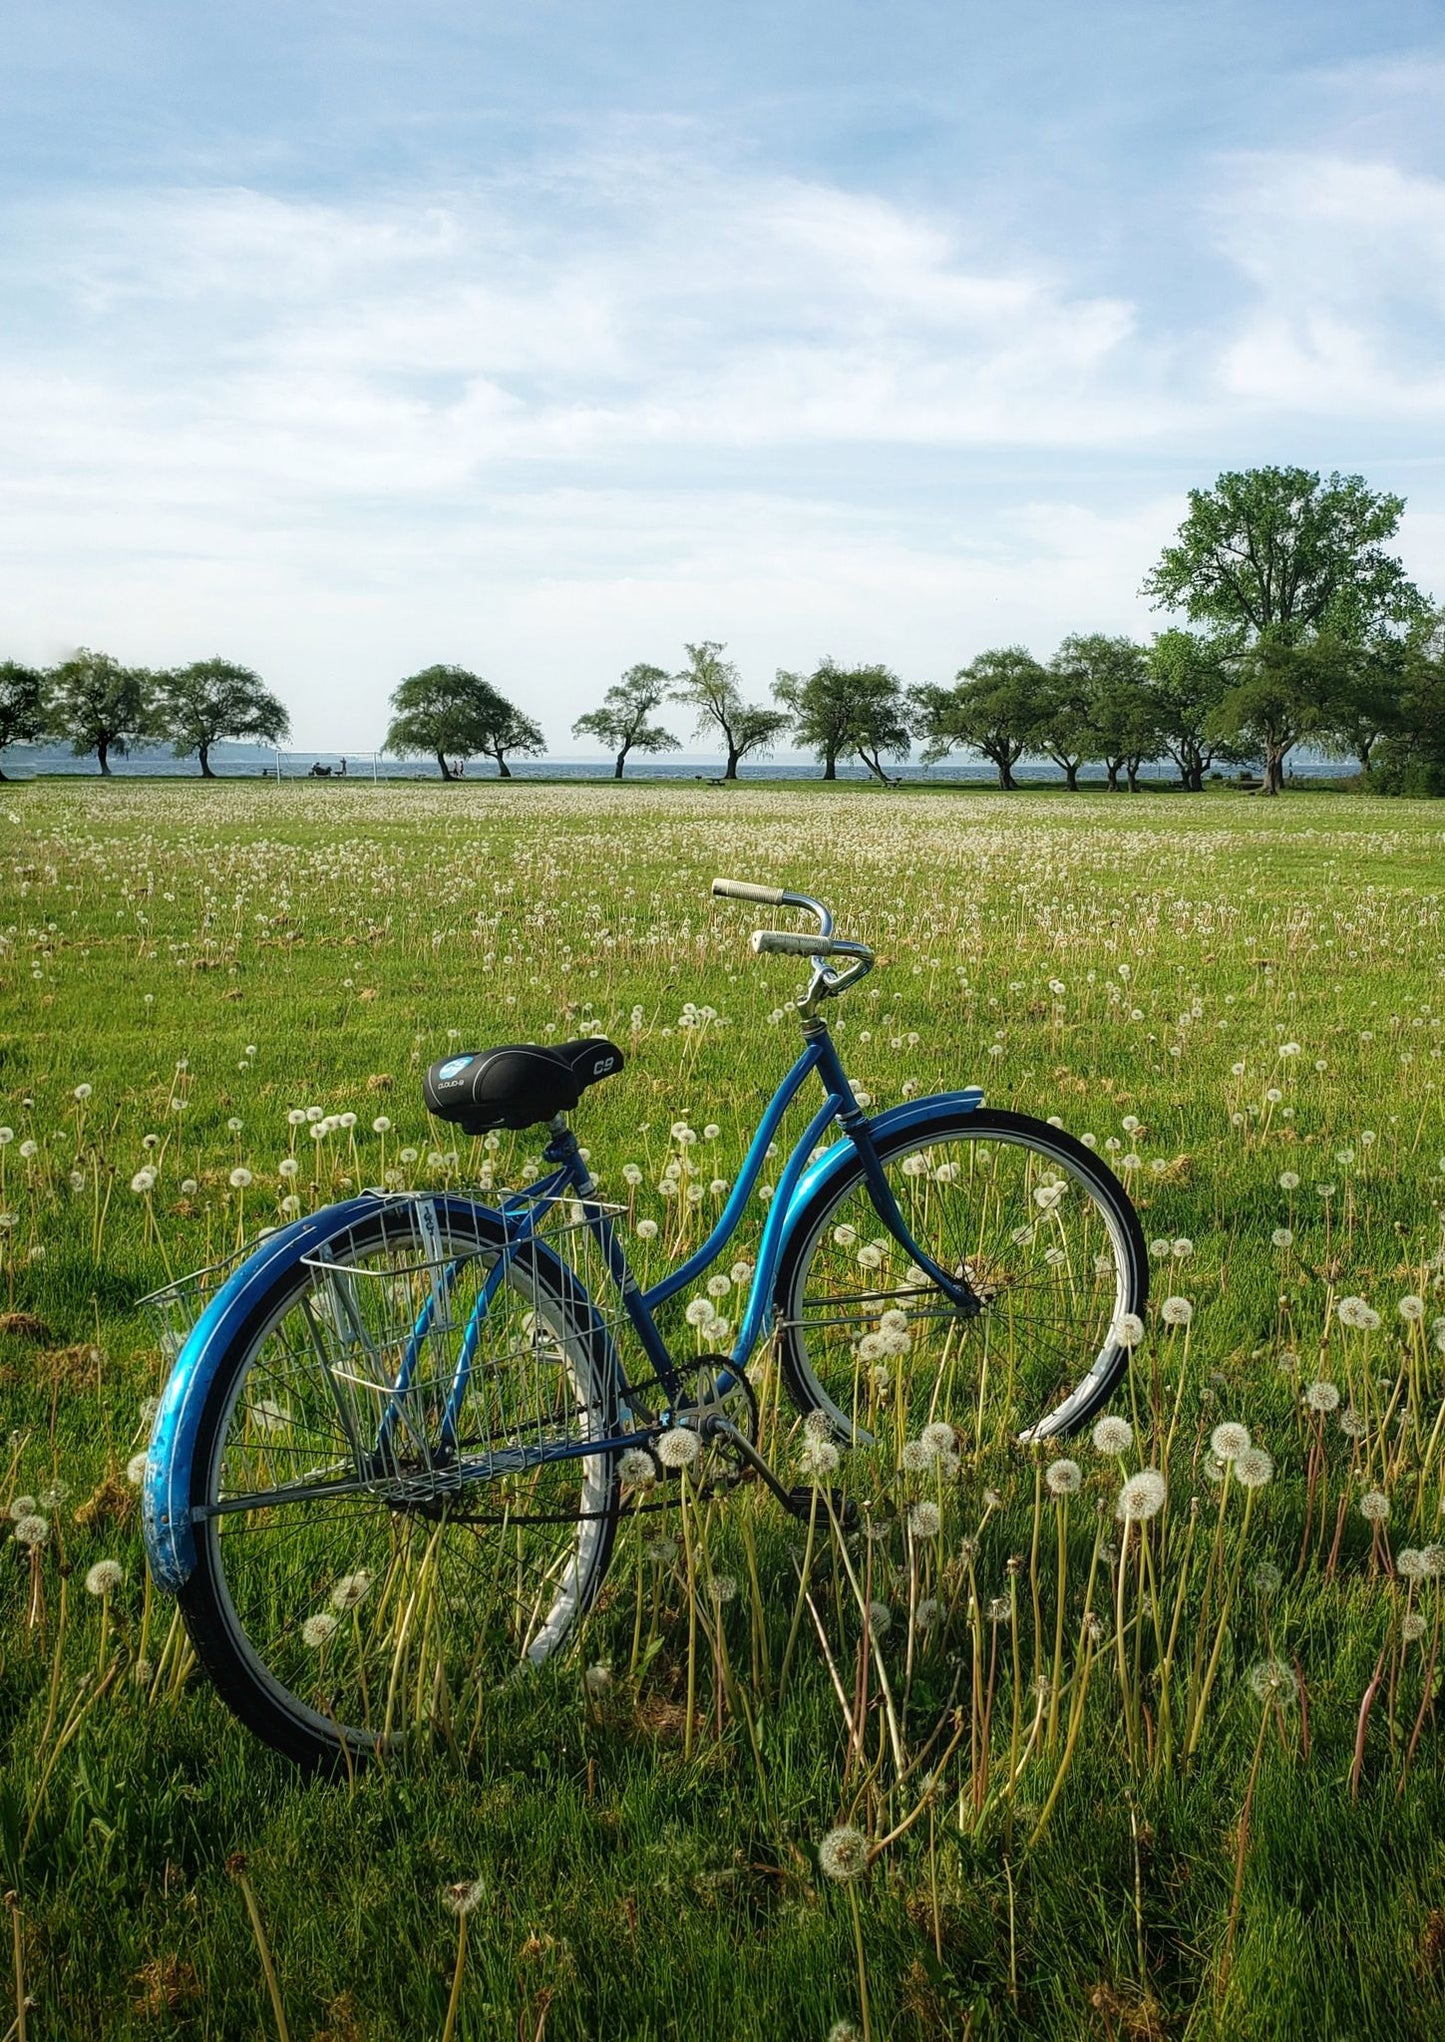 Dandelion Bike : 11x14 Matted Photograph